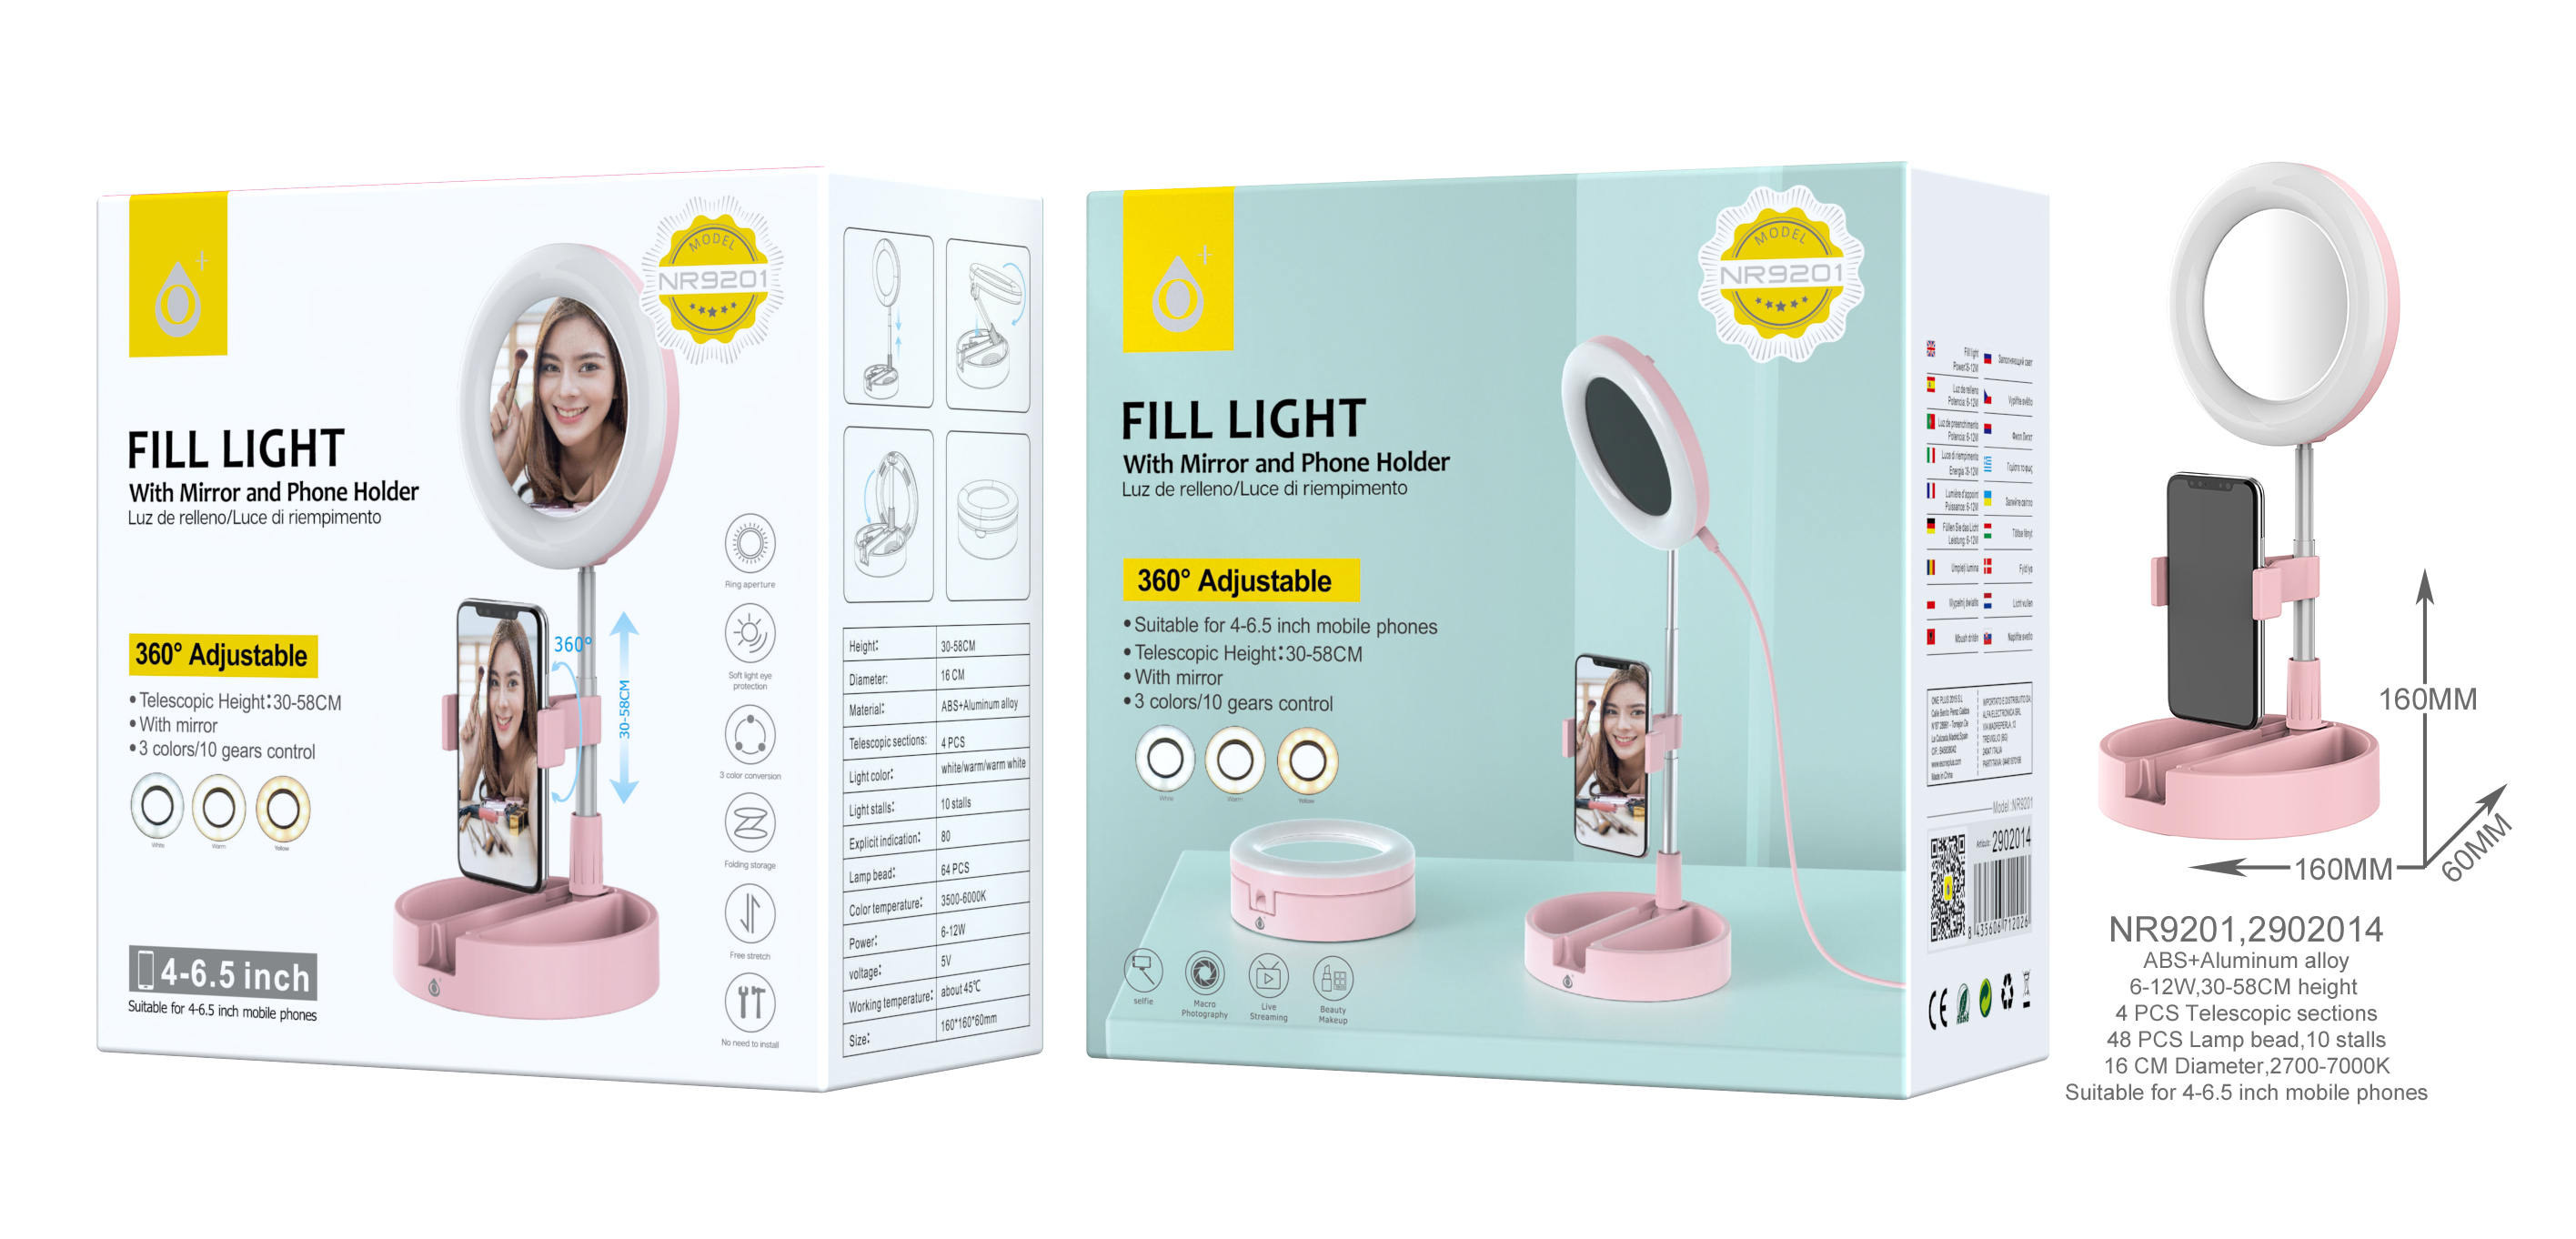 Anillo Luz LED 9cm con Soporte de Manguera de Brazo Flexible para